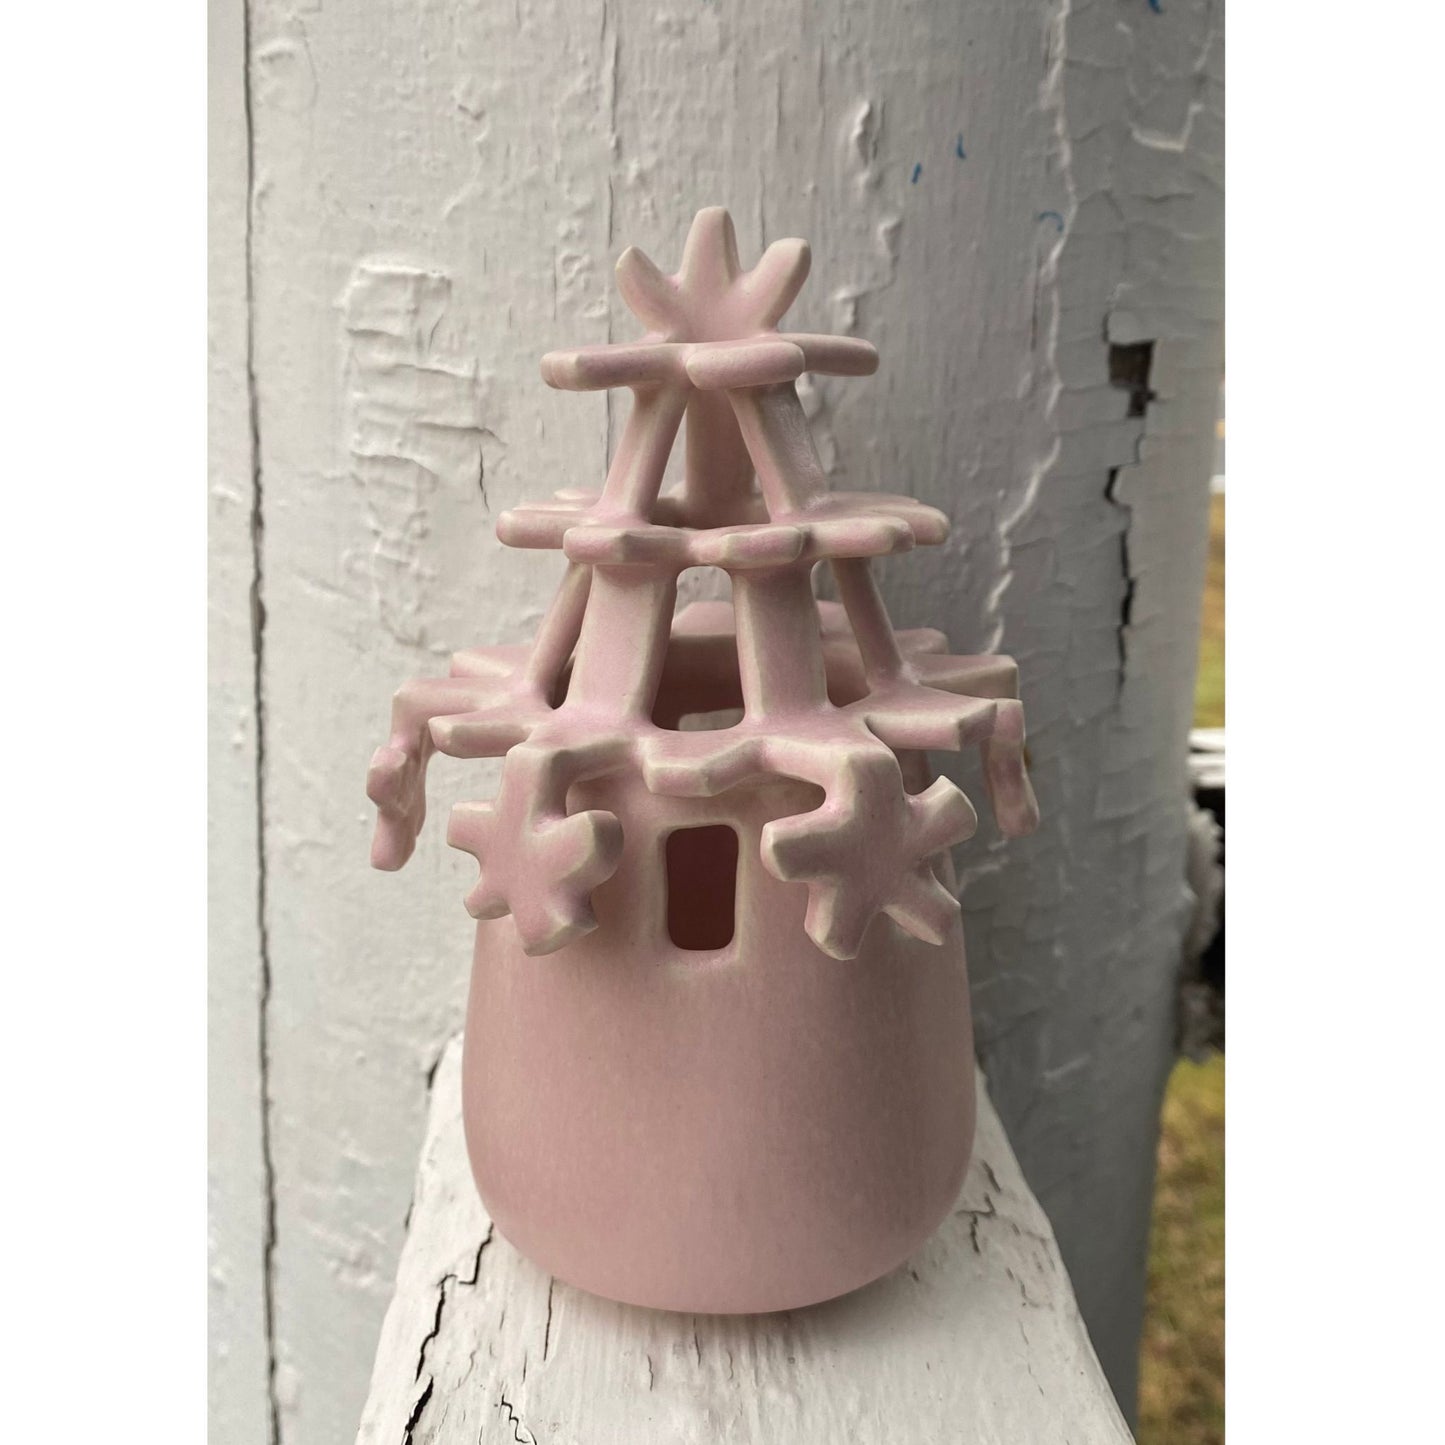 Asterisk Ceramic Vase by Chrissy Scolaro